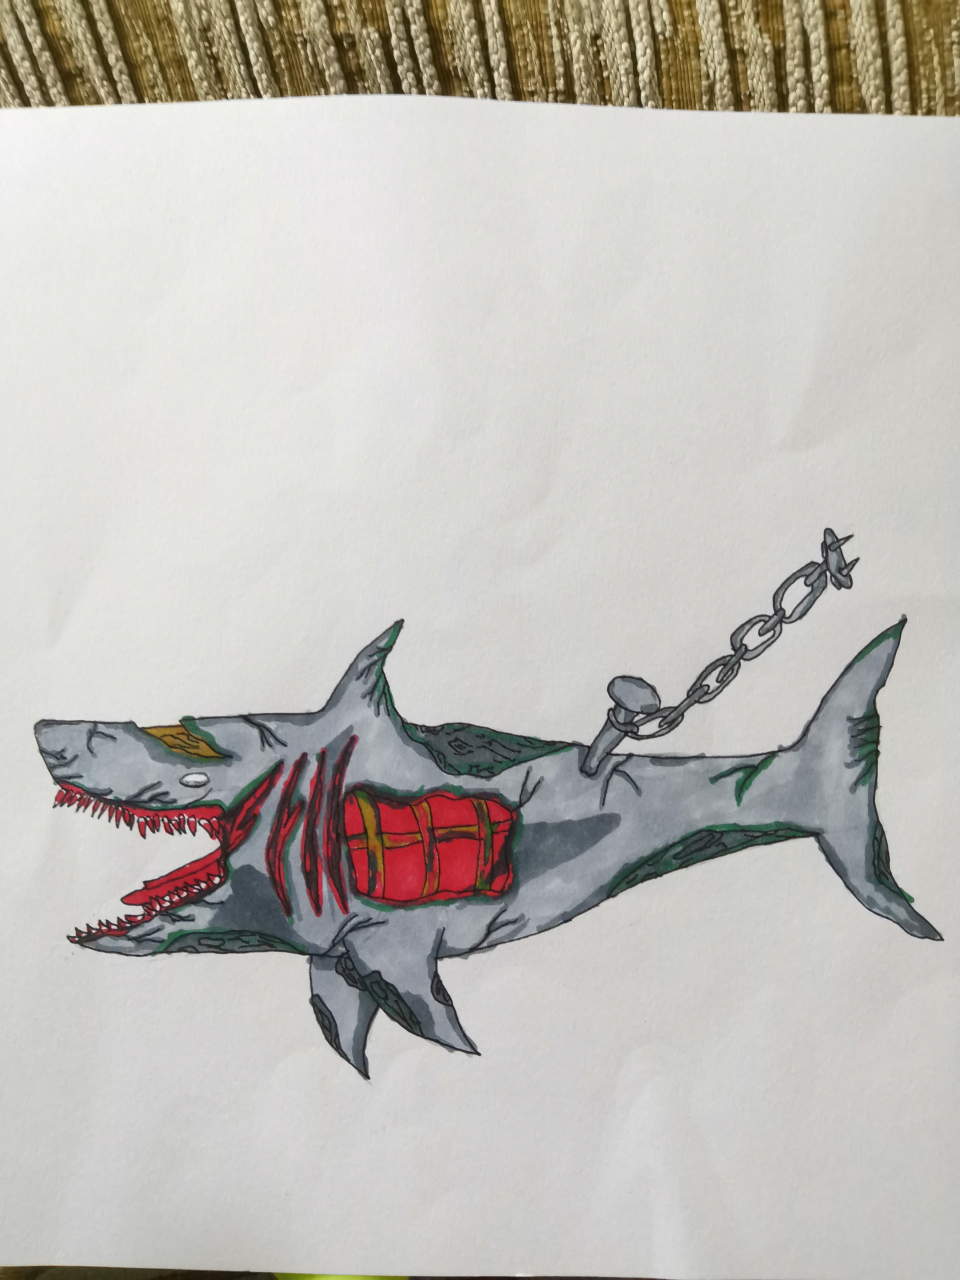 自己画的僵尸鲨,不喜勿喷[嘻嘻]